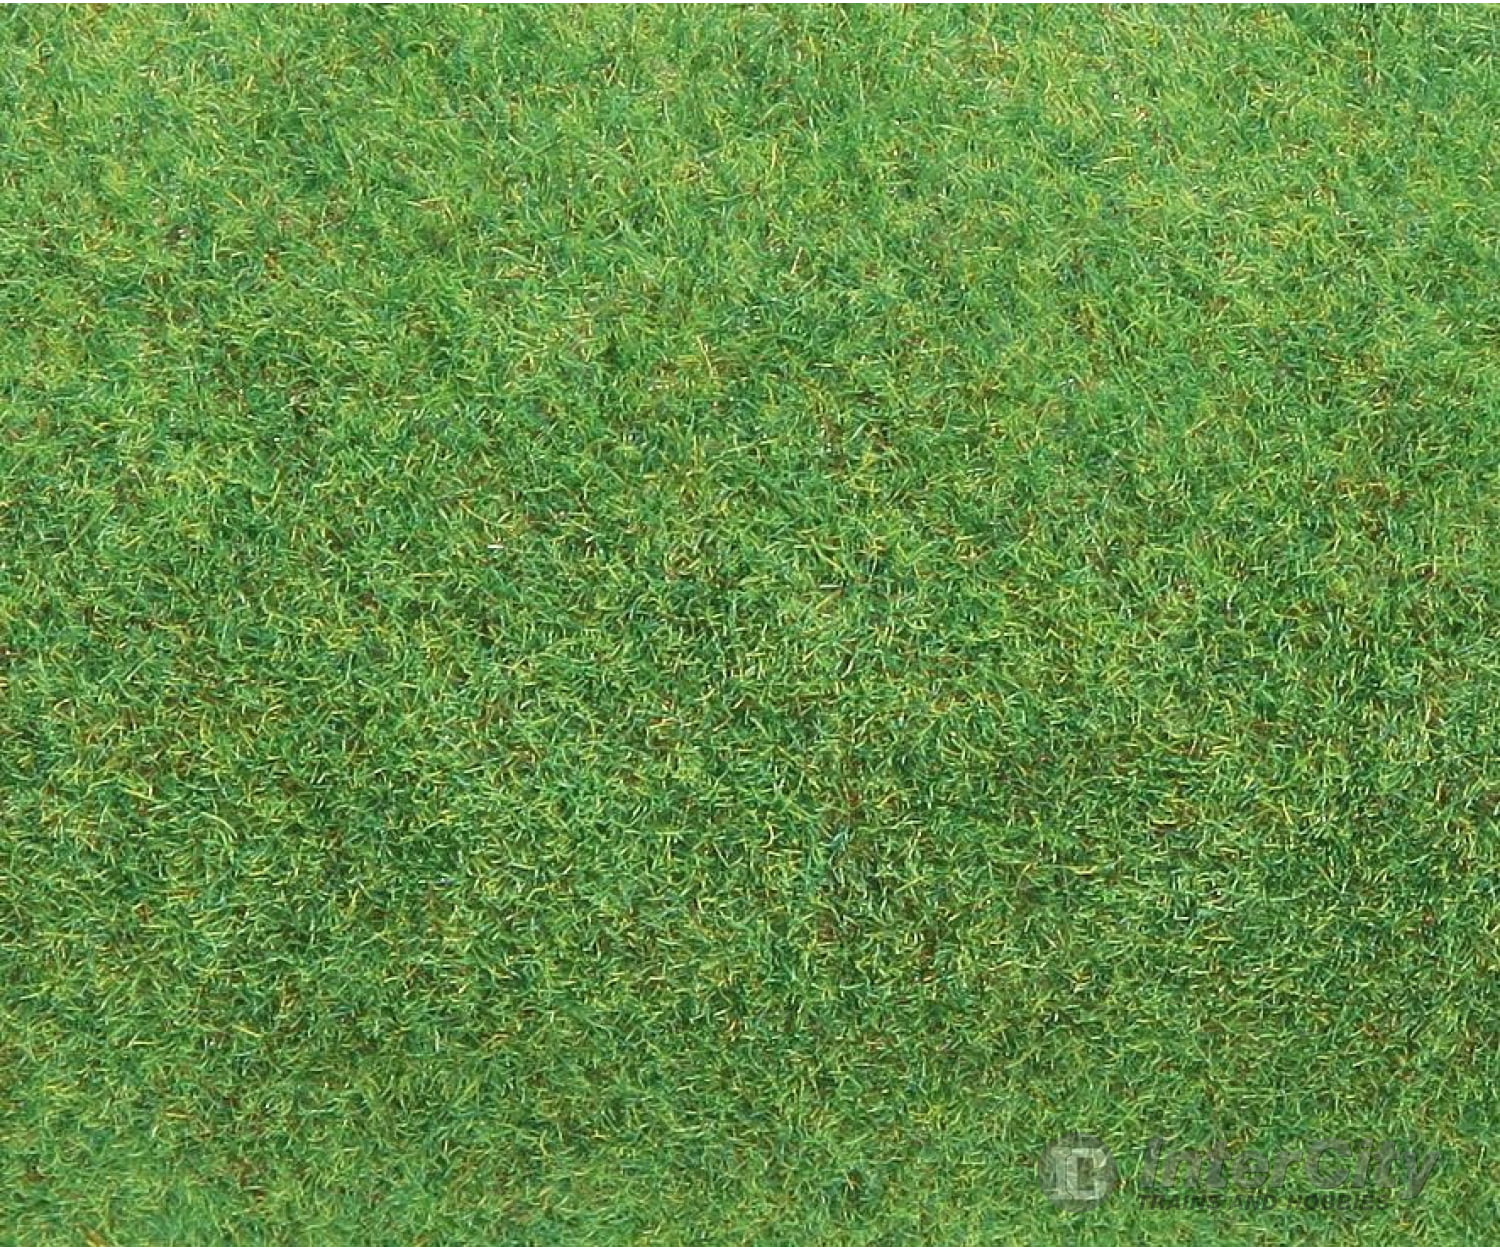 Faller 180753 Ho Tt N Z Ground Mat Light Green Grass & Scenery Mats